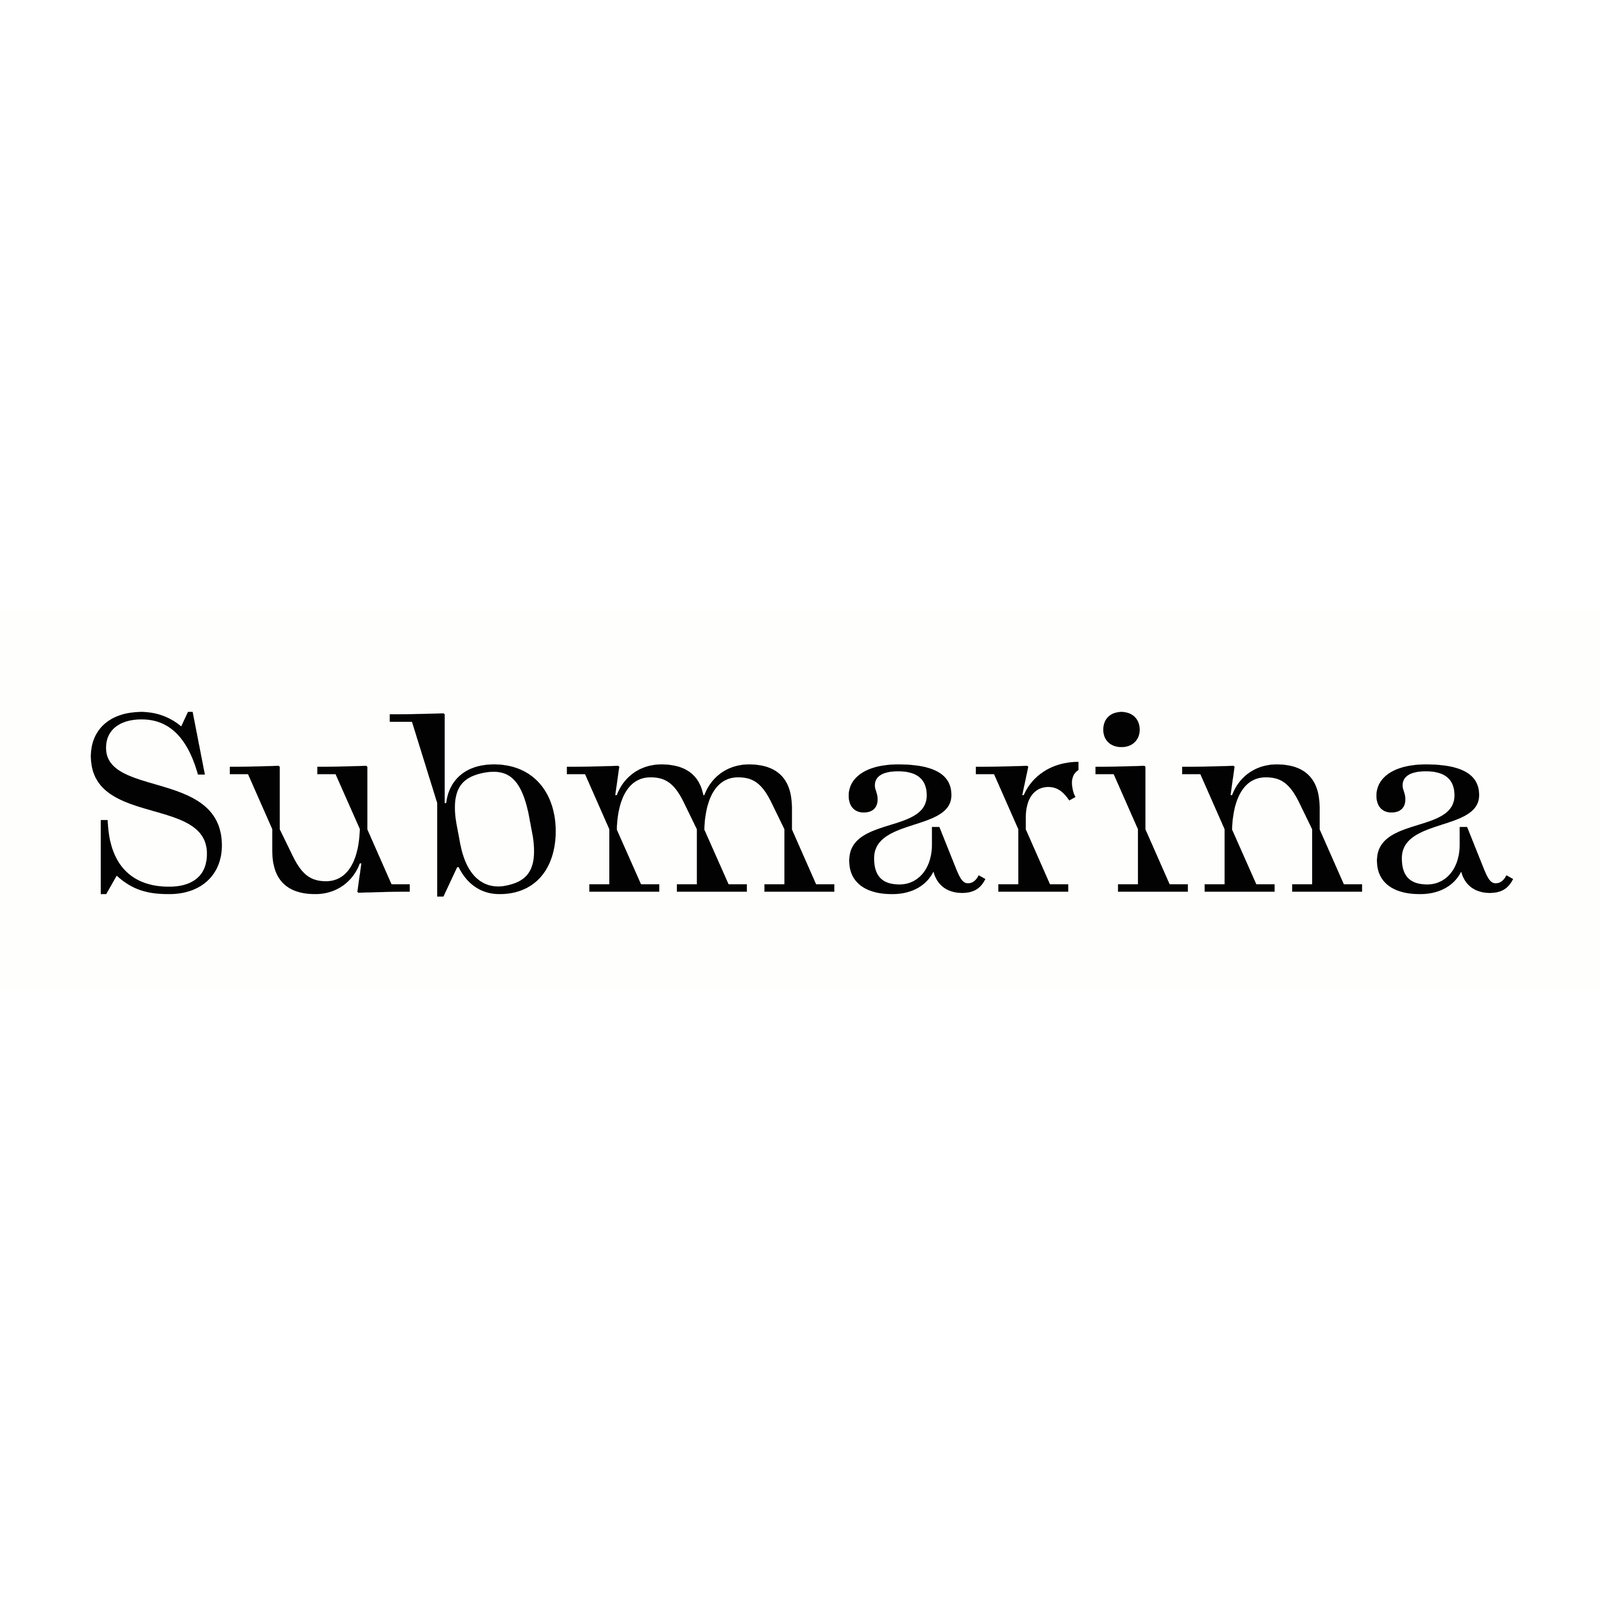 Submarina